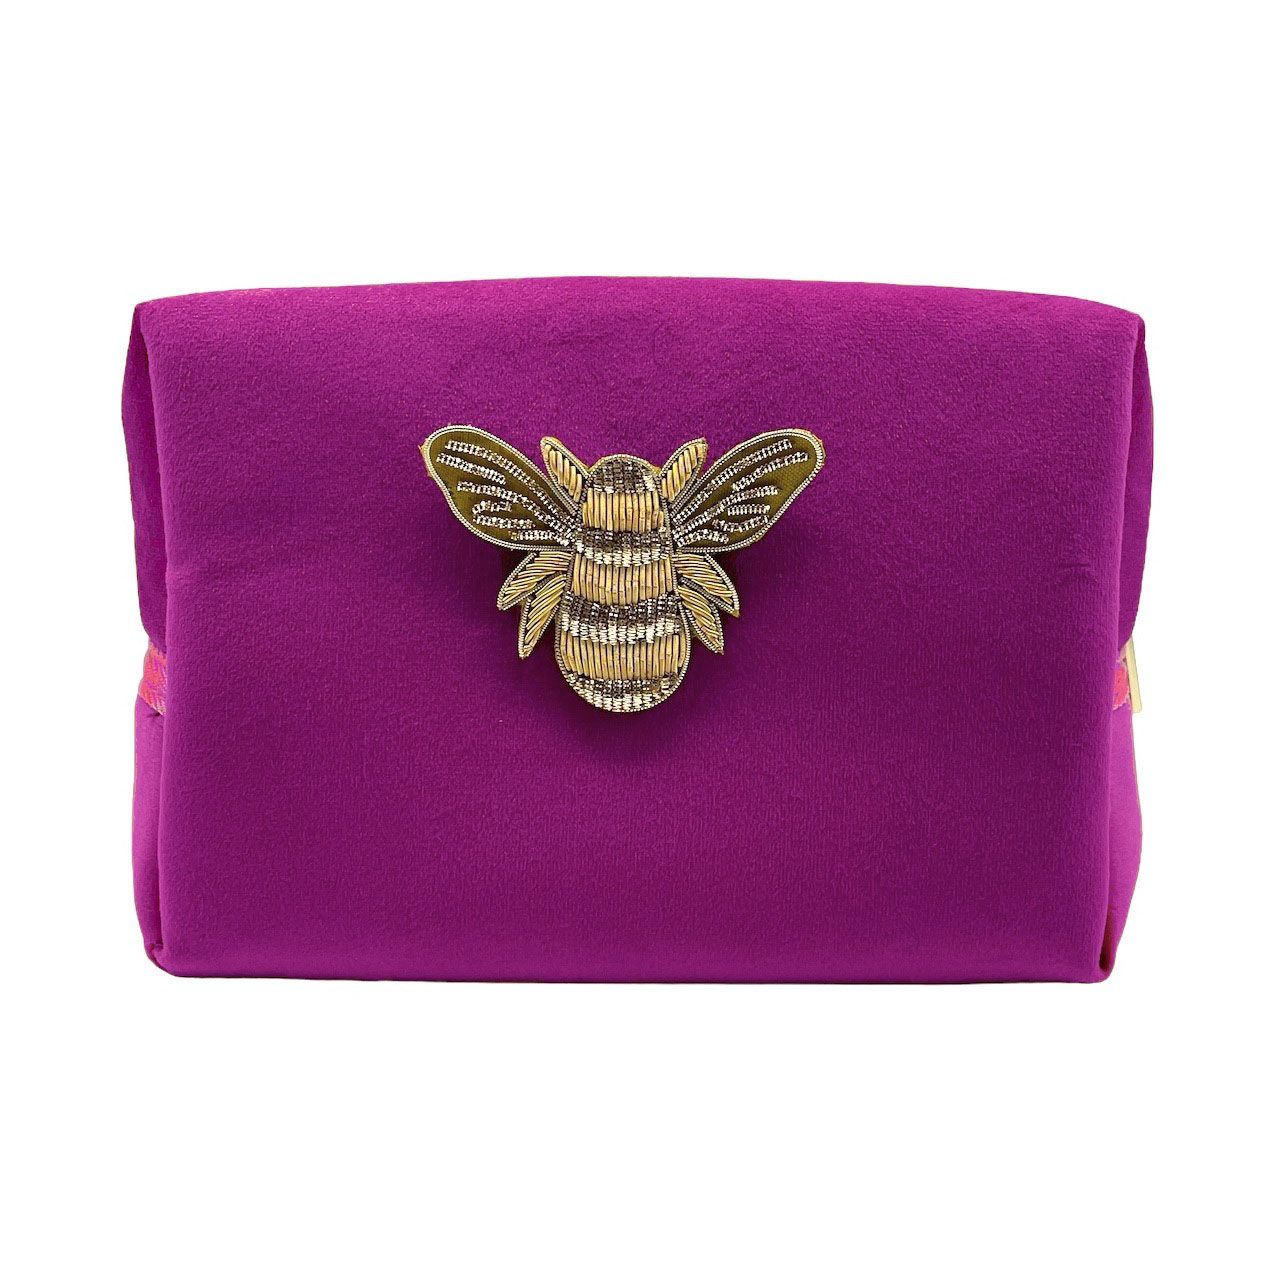 Fuchsia make-up bag & gold bee pin - recycled velvet